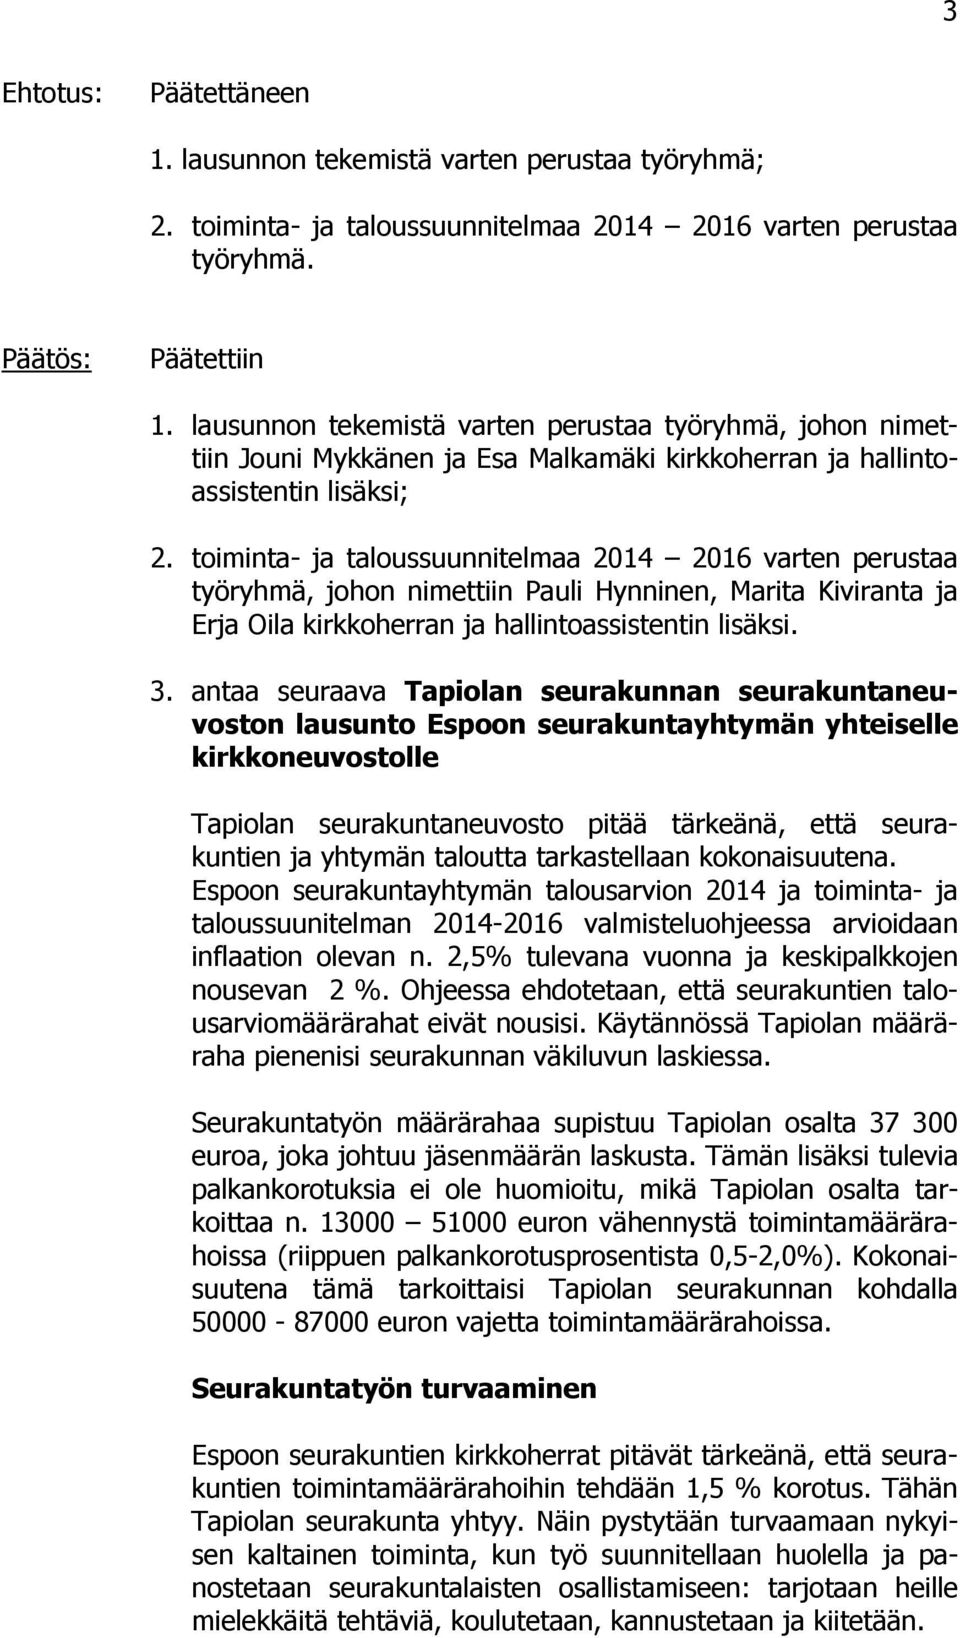 toiminta- ja taloussuunnitelmaa 2014 2016 varten perustaa työryhmä, johon nimettiin Pauli Hynninen, Marita Kiviranta ja Erja Oila kirkkoherran ja hallintoassistentin lisäksi. 3.